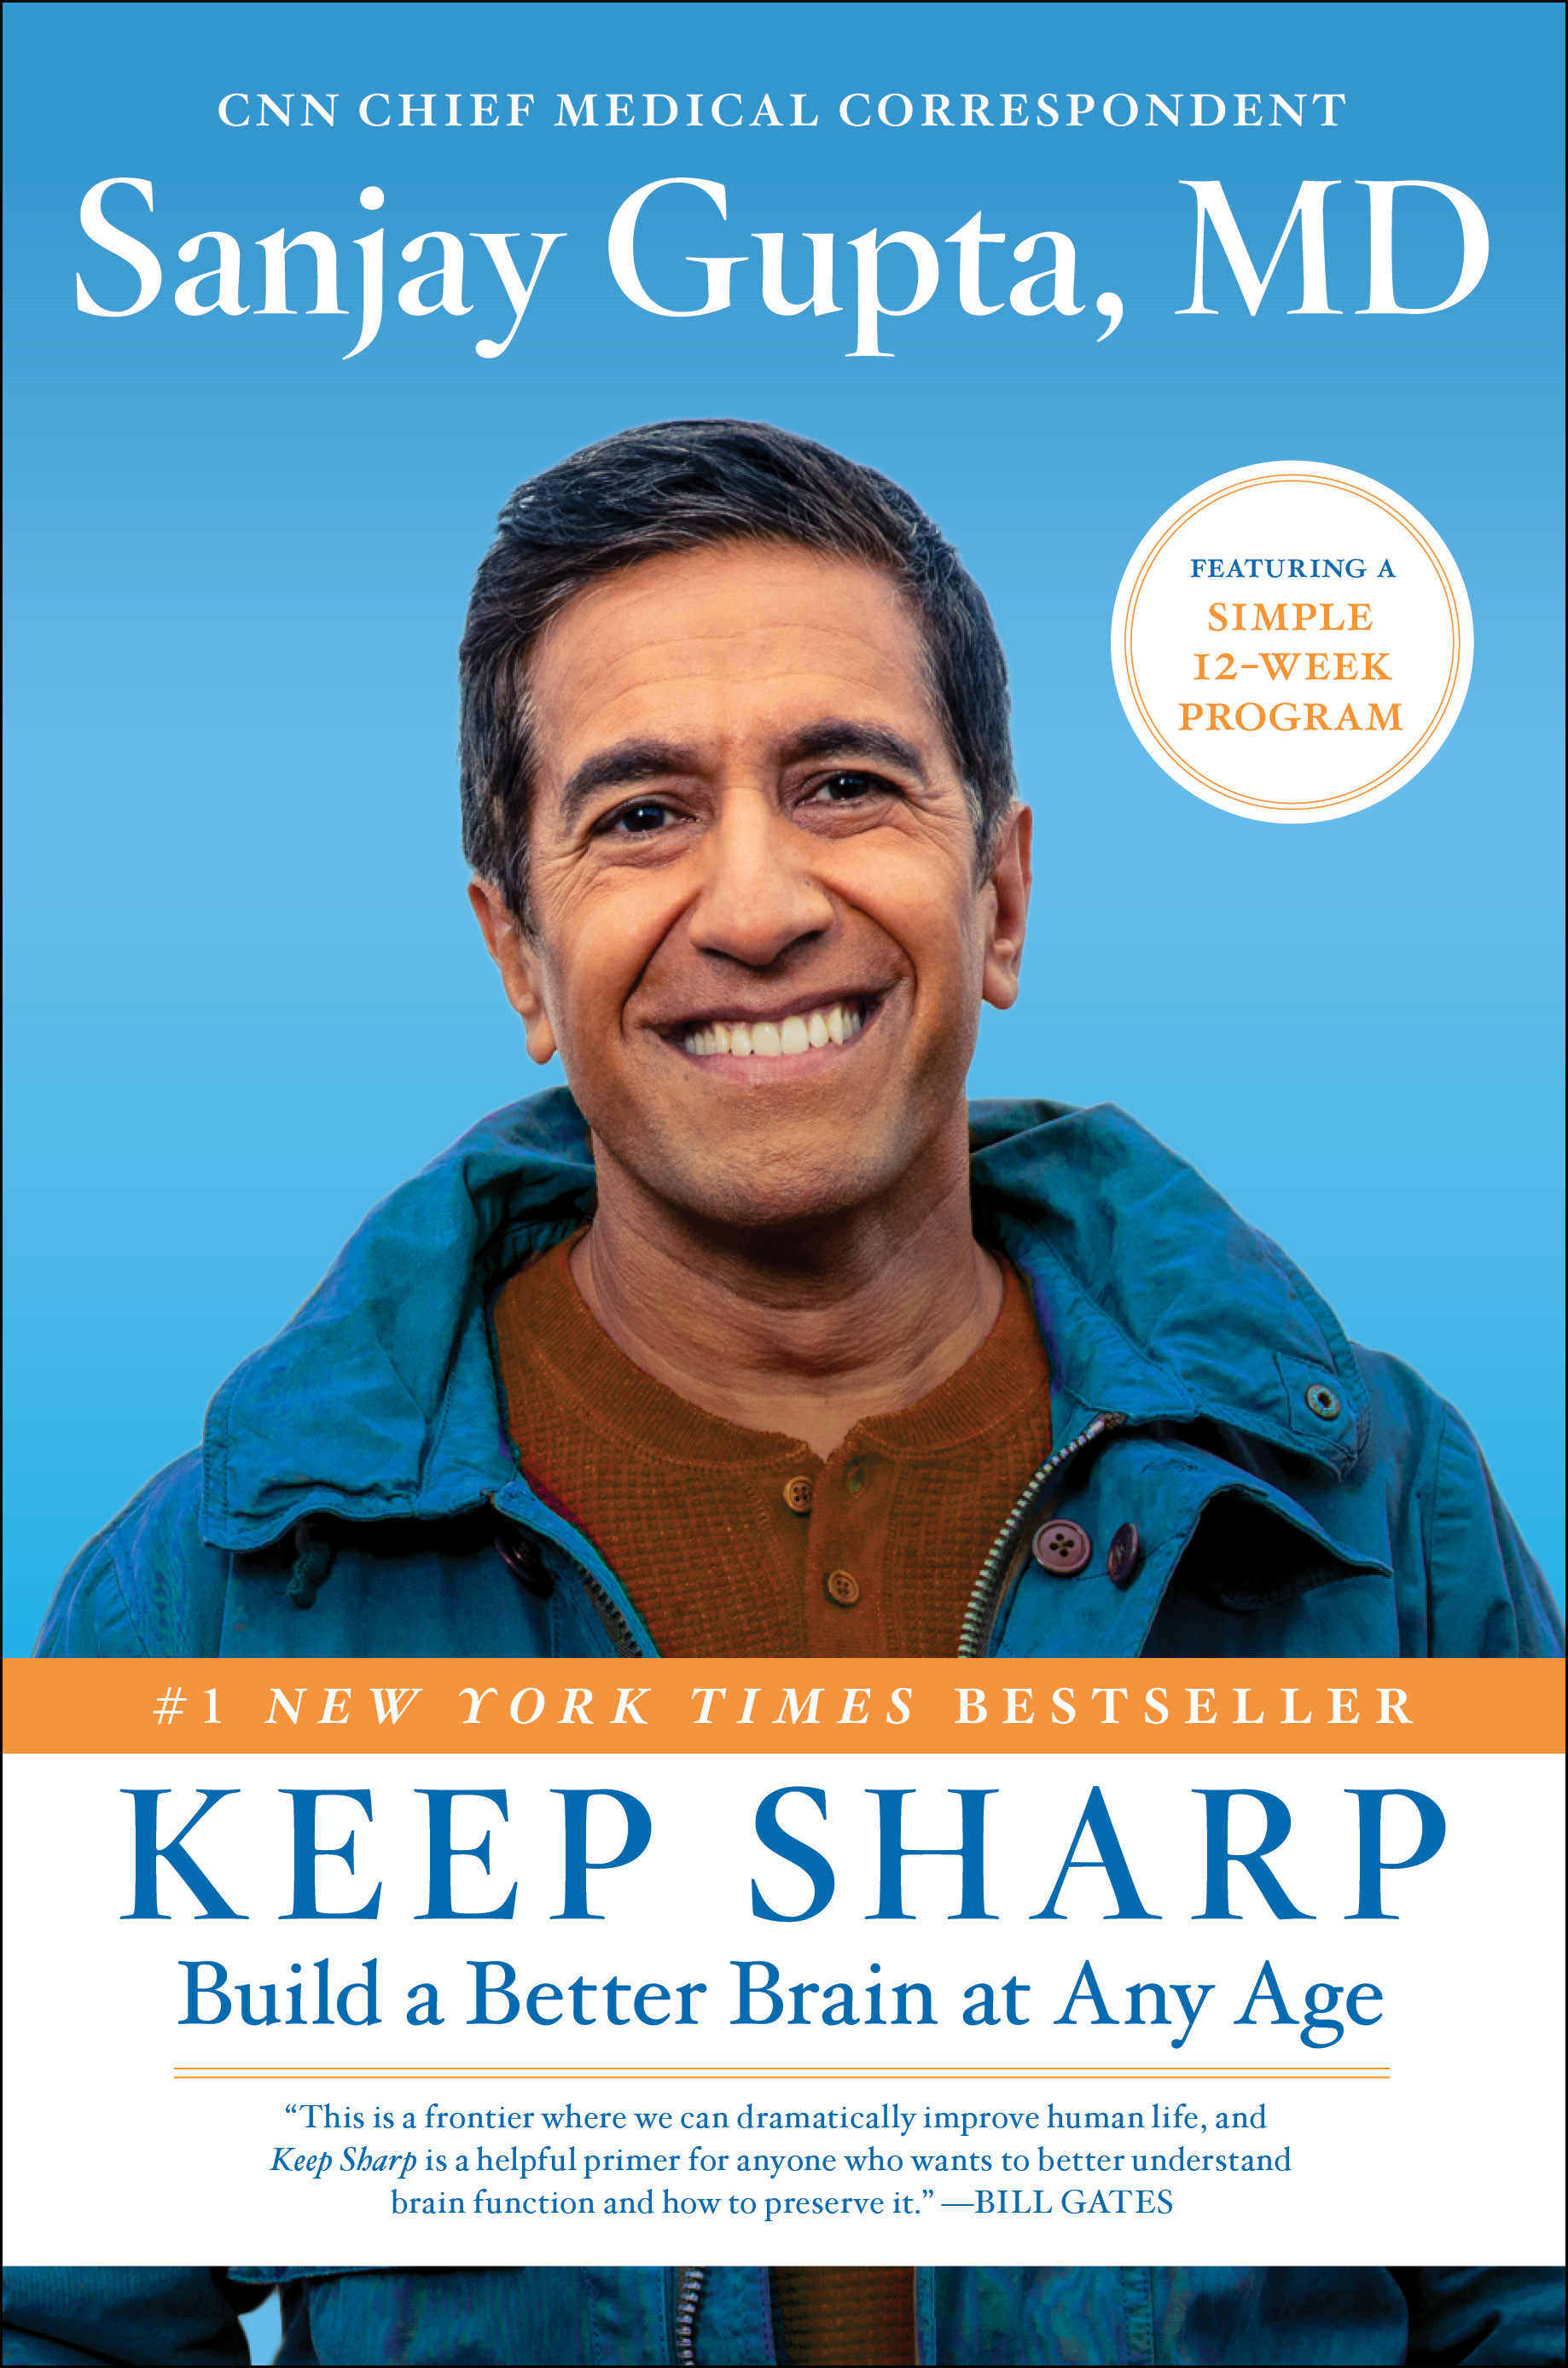 Sanjay Gupta, MD's Keep Sharp book cover